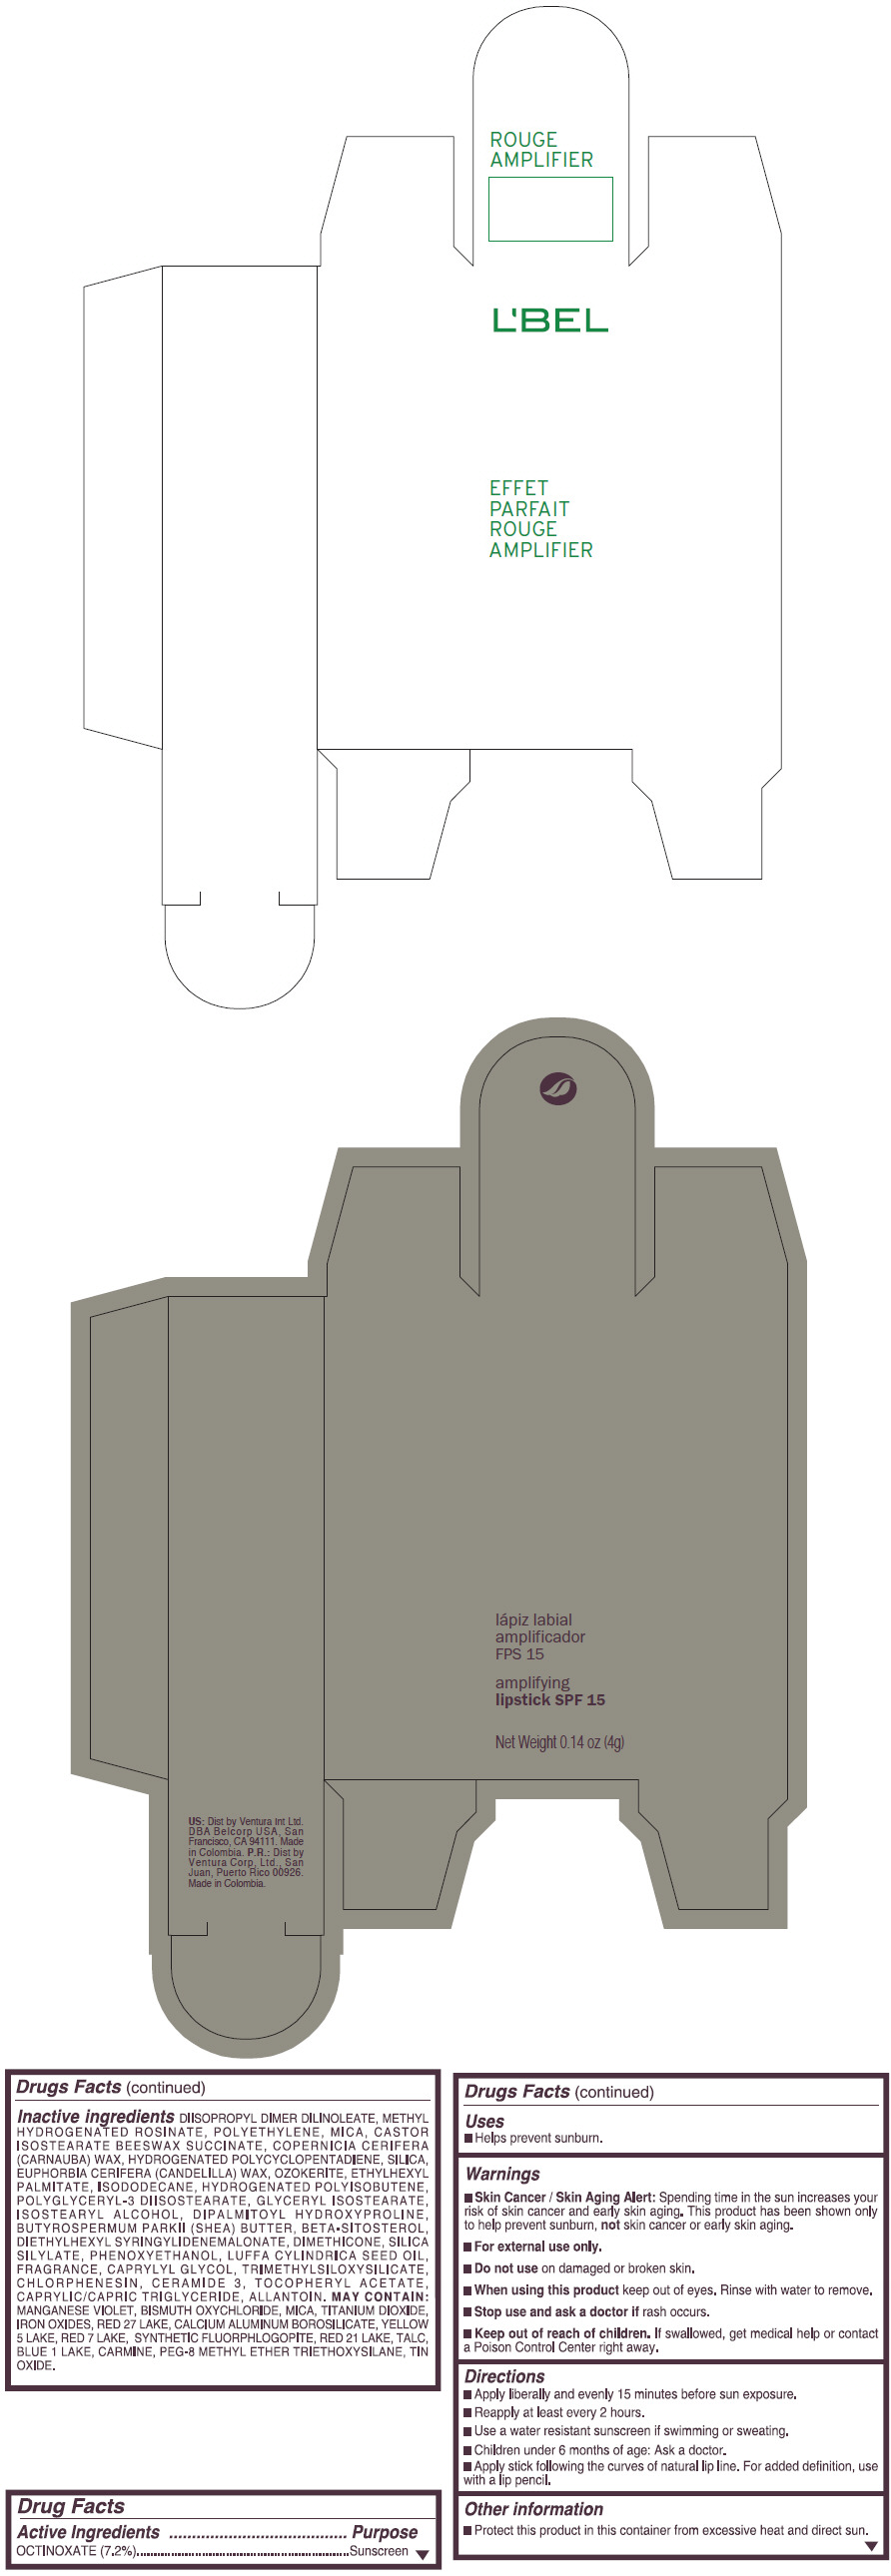 PRINCIPAL DISPLAY PANEL - 4 g Tube Box - (FUCSIA DESIR) - BROWN